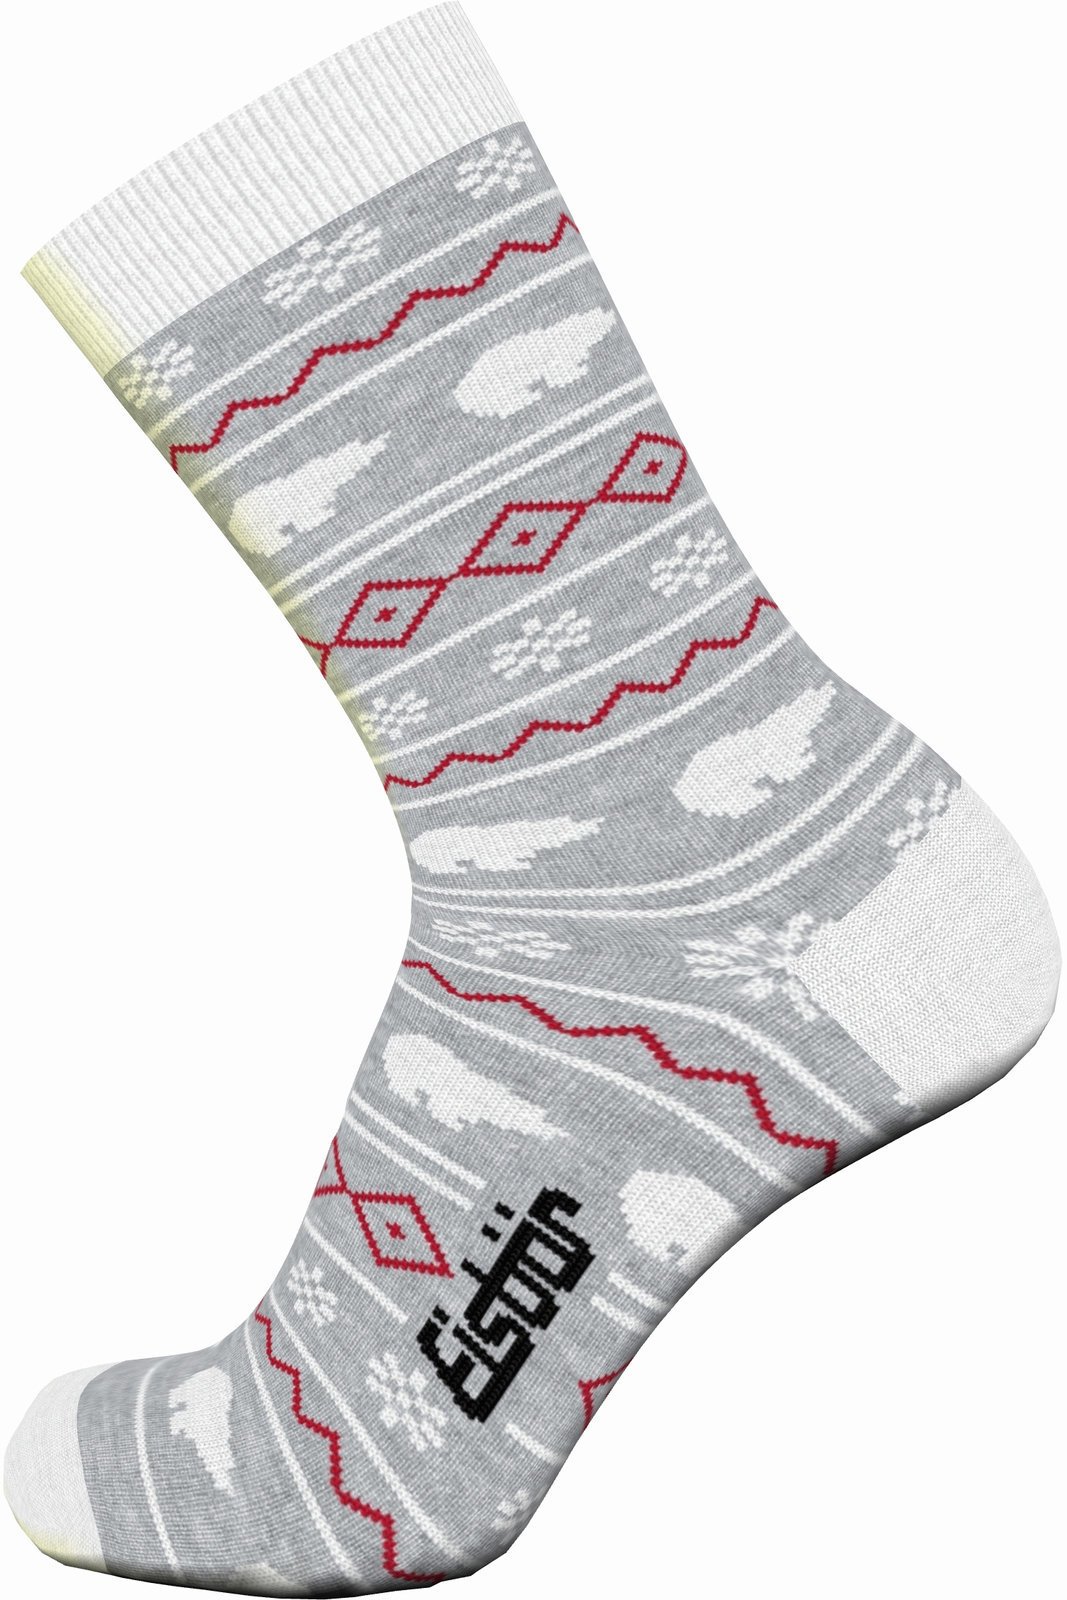 Ski Socks Eisbär Lifestyle Jacquard Red-Grey 23-26 Ski Socks (Just unboxed)